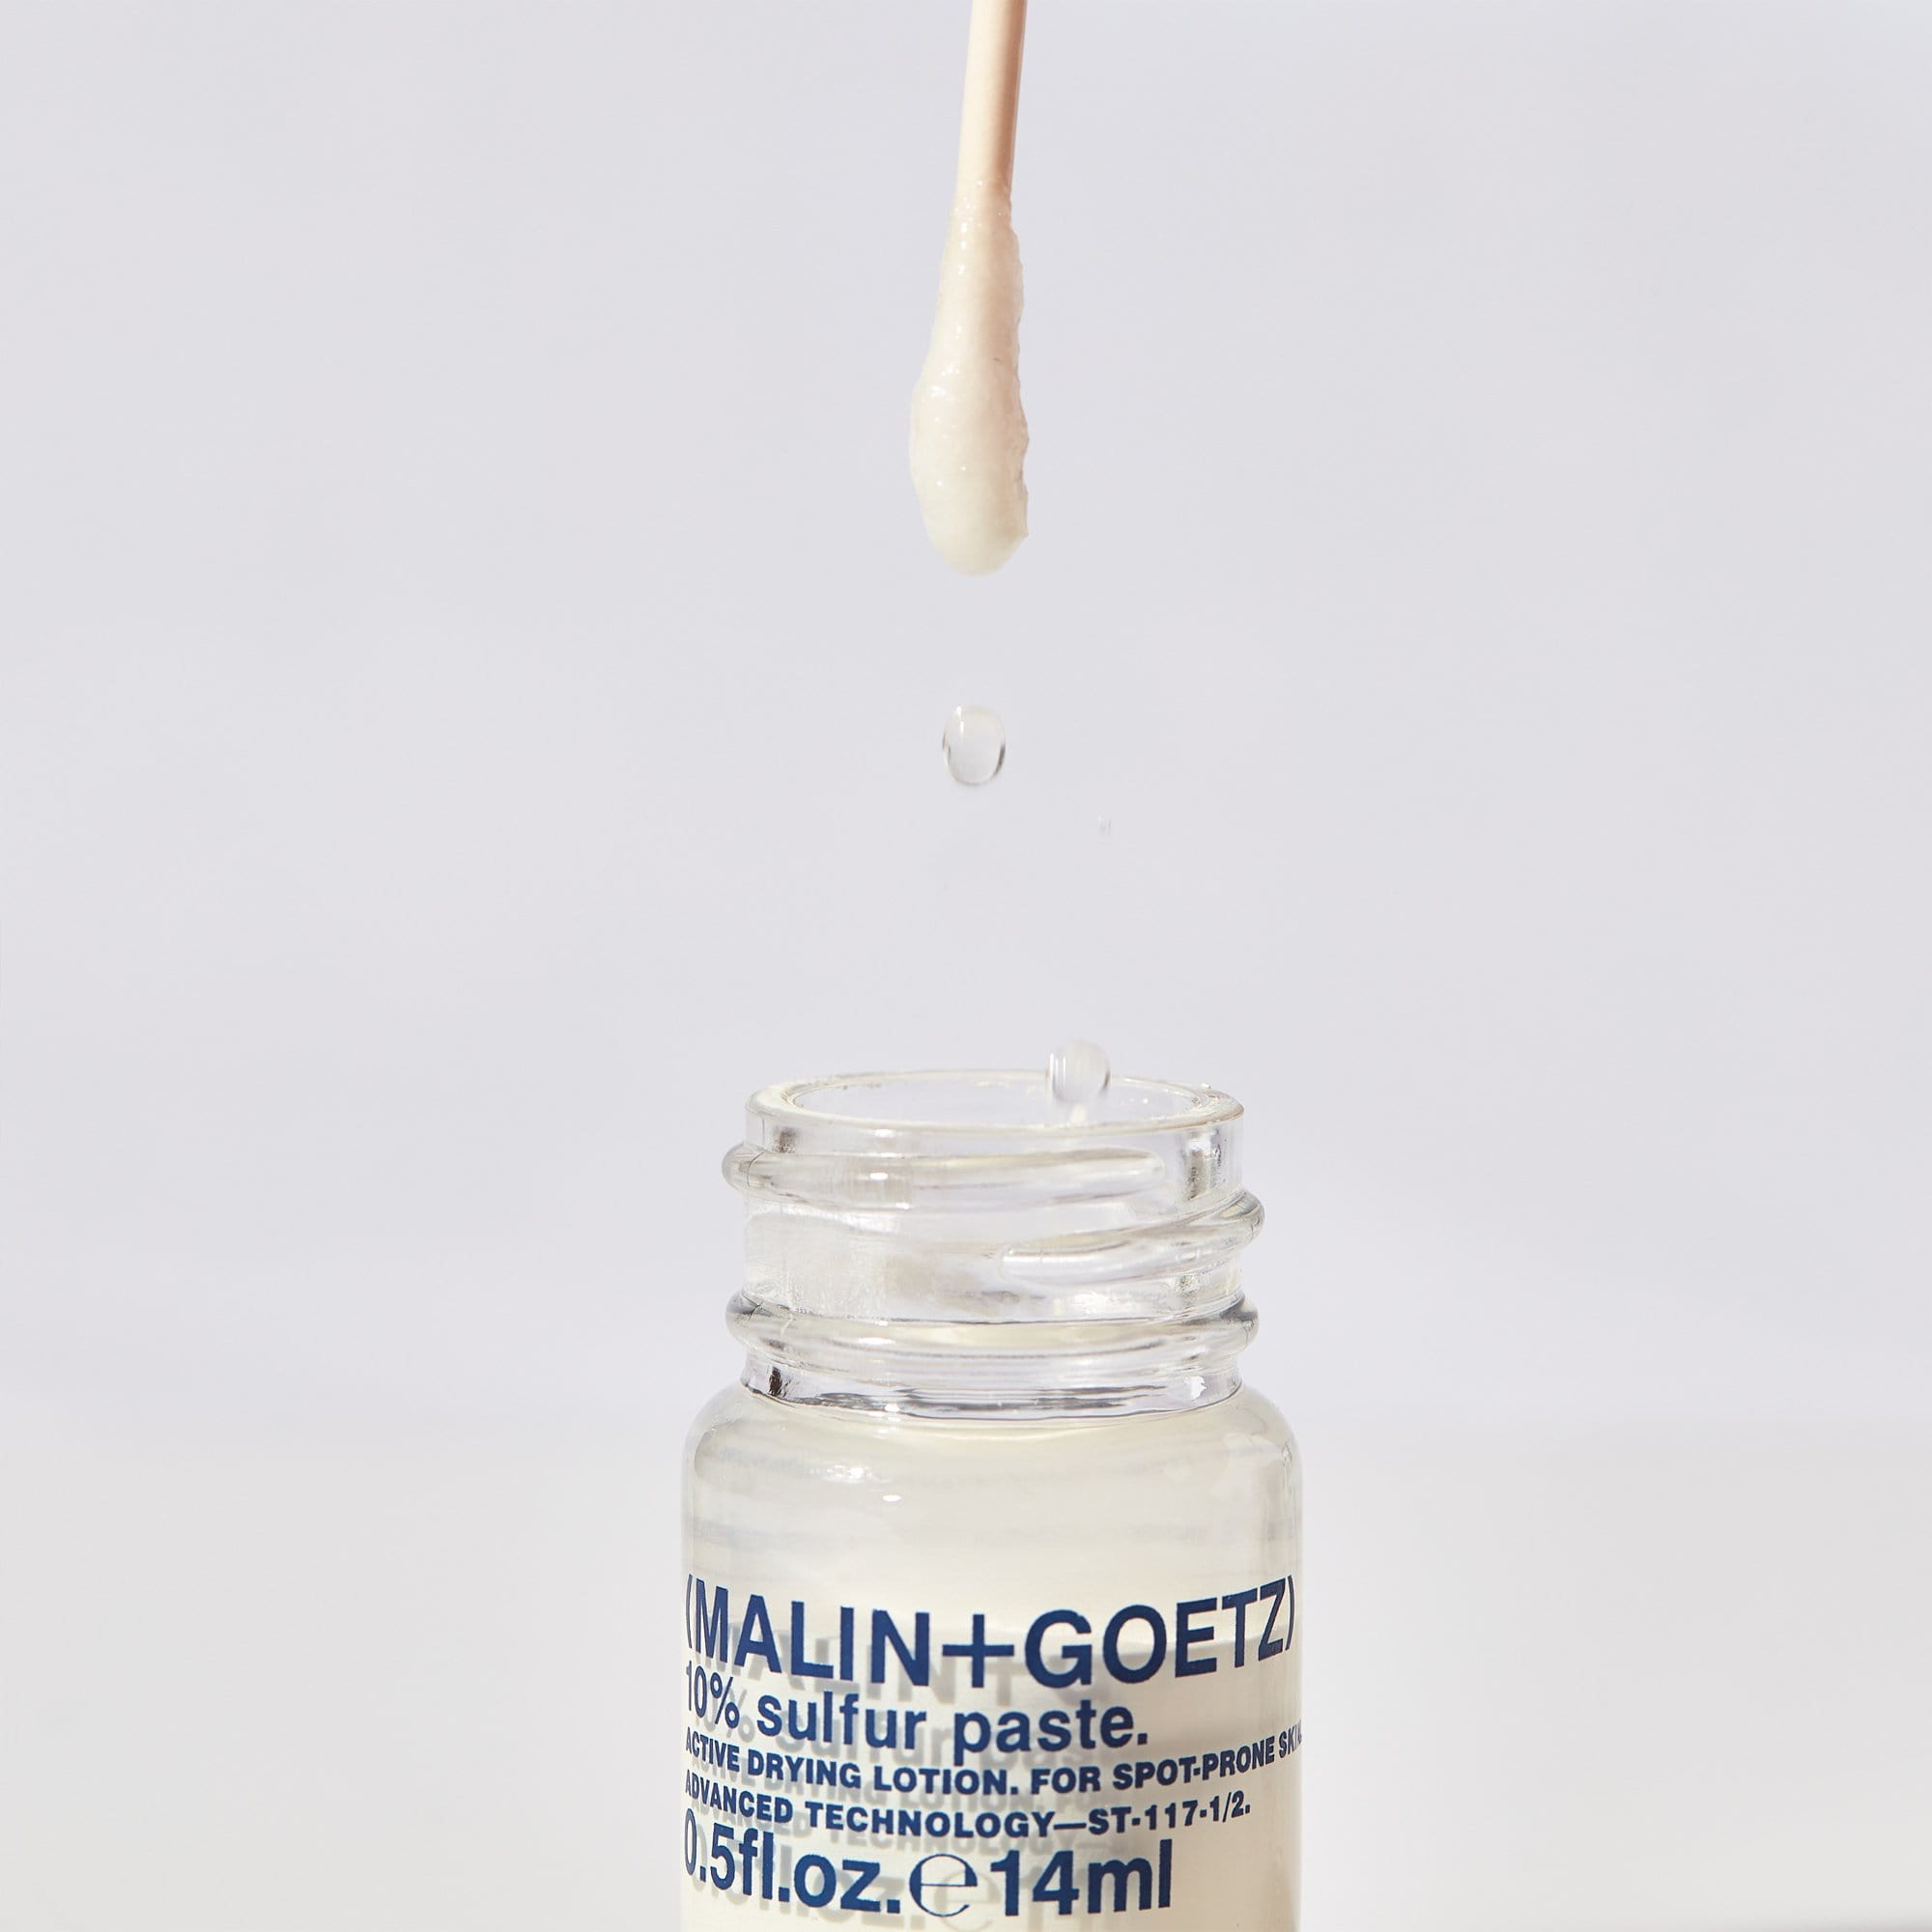 10% Sulfur Paste (MALIN+GOETZ) Tratamiento para el acné